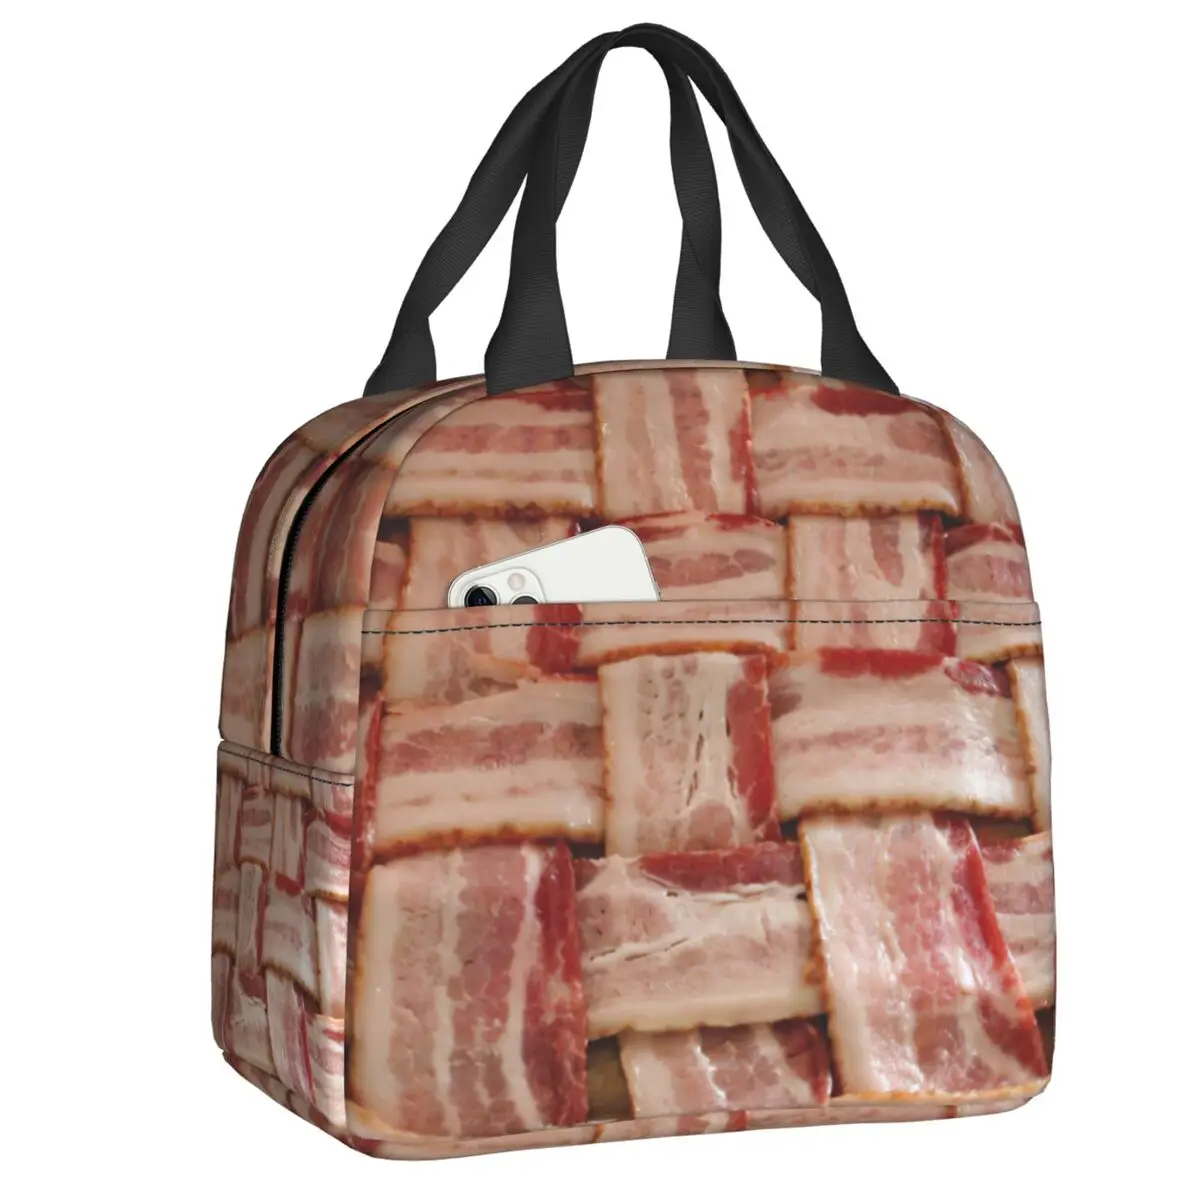 Изготовленная на Заказ забавная сумка для ланча с рисунком бекона в клетку для любителей мяса, женские термоохладители, изолированные Ланч-боксы для учащихся школы